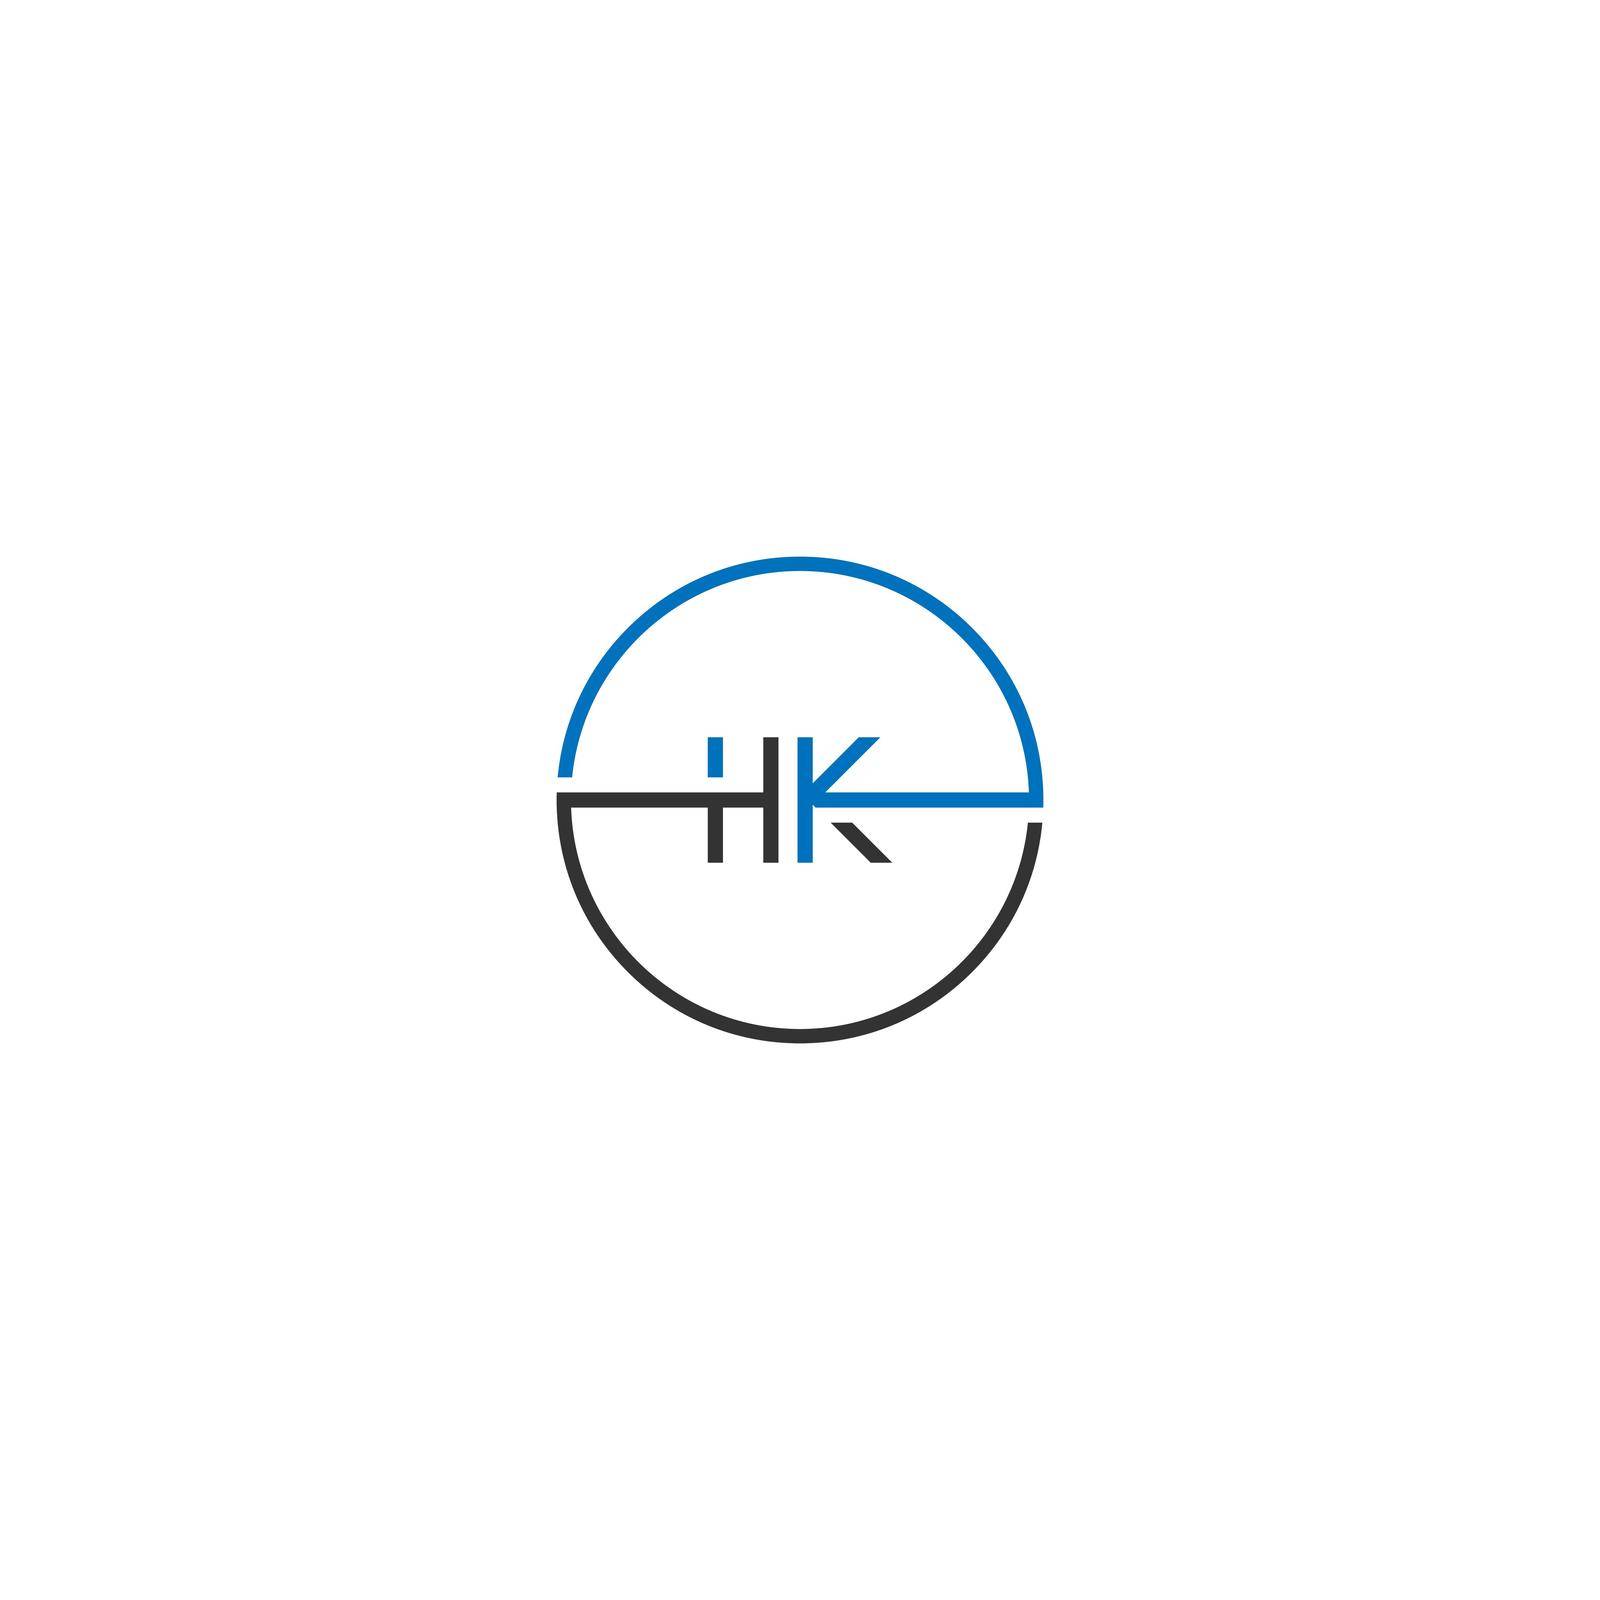 HK logo letter design concept by bellaxbudhong3